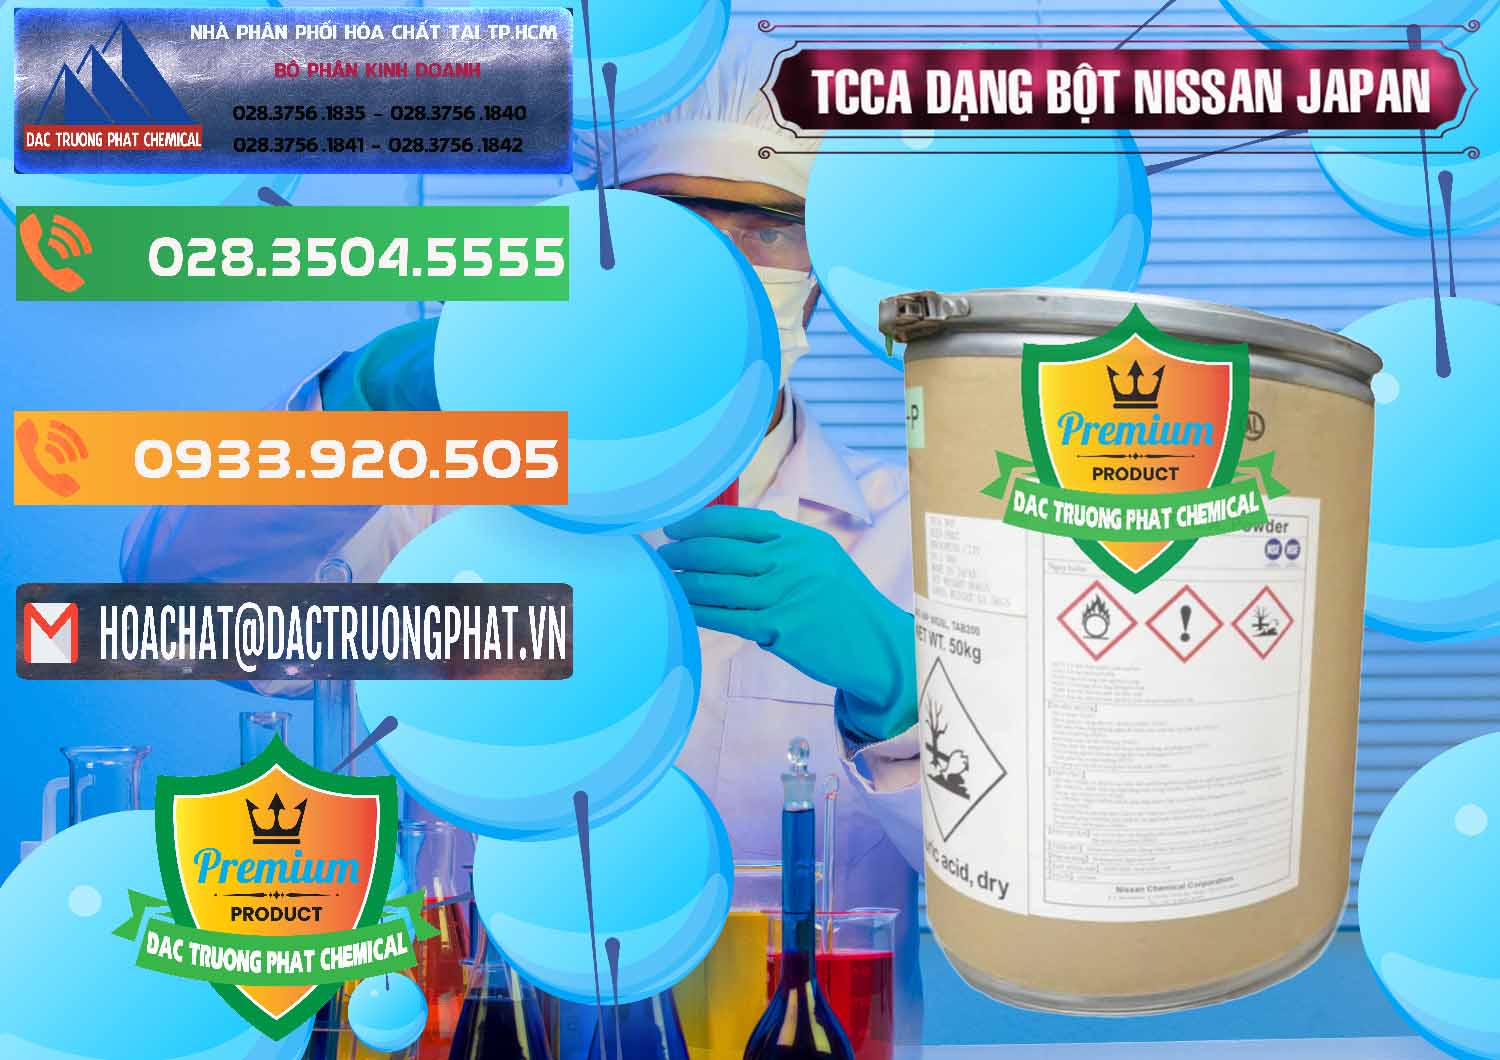 Cty chuyên bán - phân phối TCCA - Acid Trichloroisocyanuric 90% Dạng Bột Nissan Nhật Bản Japan - 0375 - Cty chuyên cung cấp và kinh doanh hóa chất tại TP.HCM - hoachatxulynuoc.com.vn